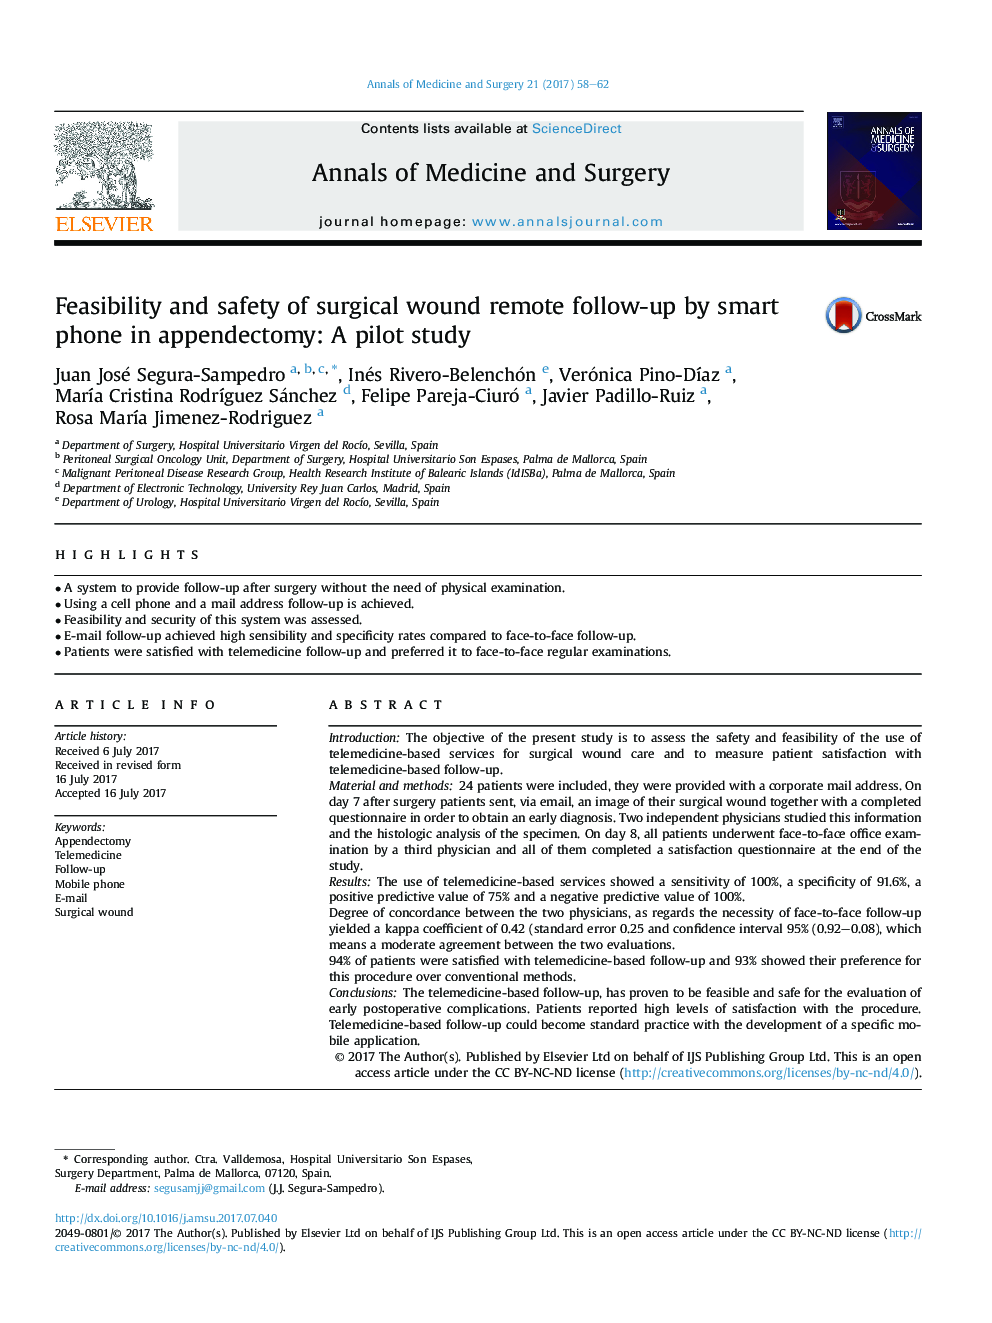 امکان سنجی و ایمنی پیگیری از راه دور زخم جراحی توسط تلفن هوشمند در آپاندکتومی: یک مطالعه آزمایشی 